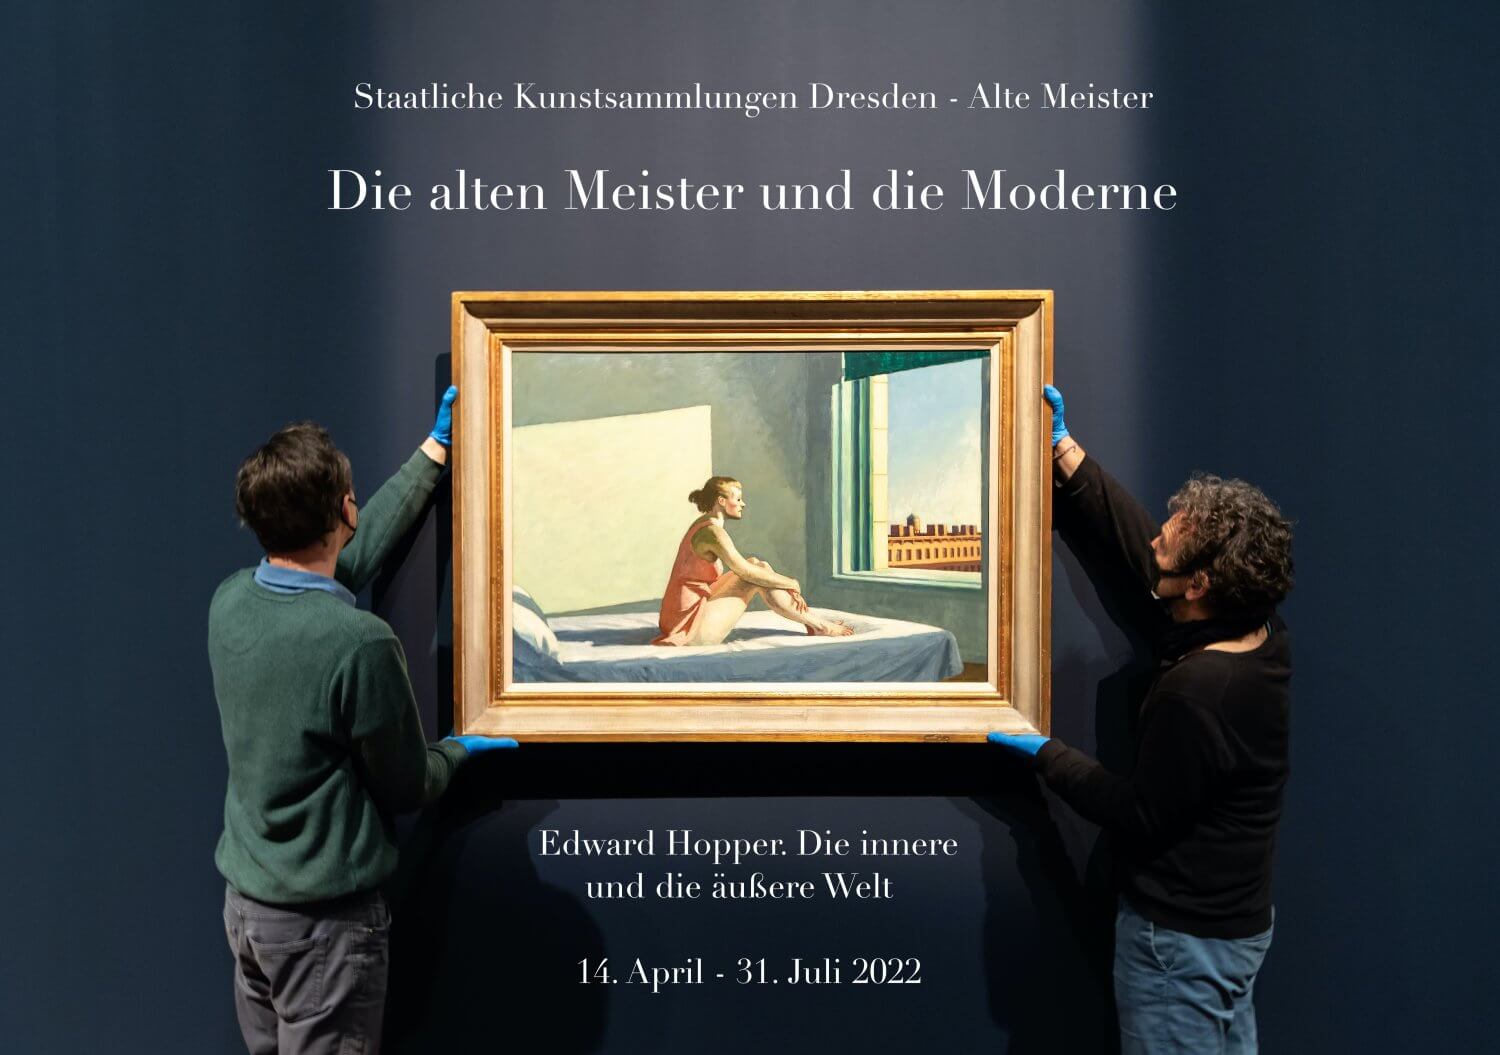 Edward Hopper. Die innere und die äußere Welt